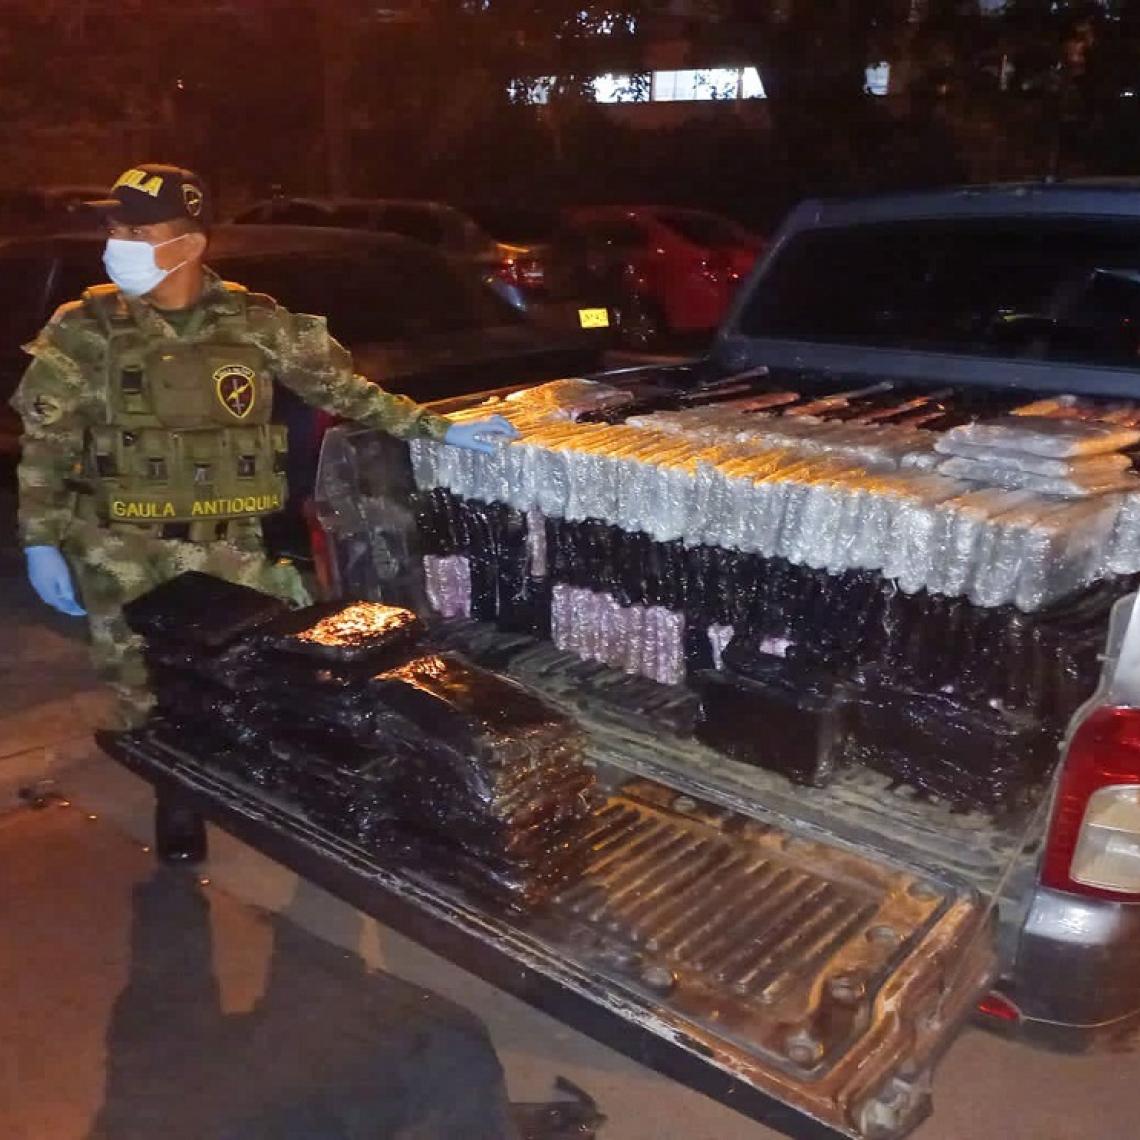 Ejército y Policía incautan camioneta con media tonelada de estupefacientes que serían distribuidos en Medellín